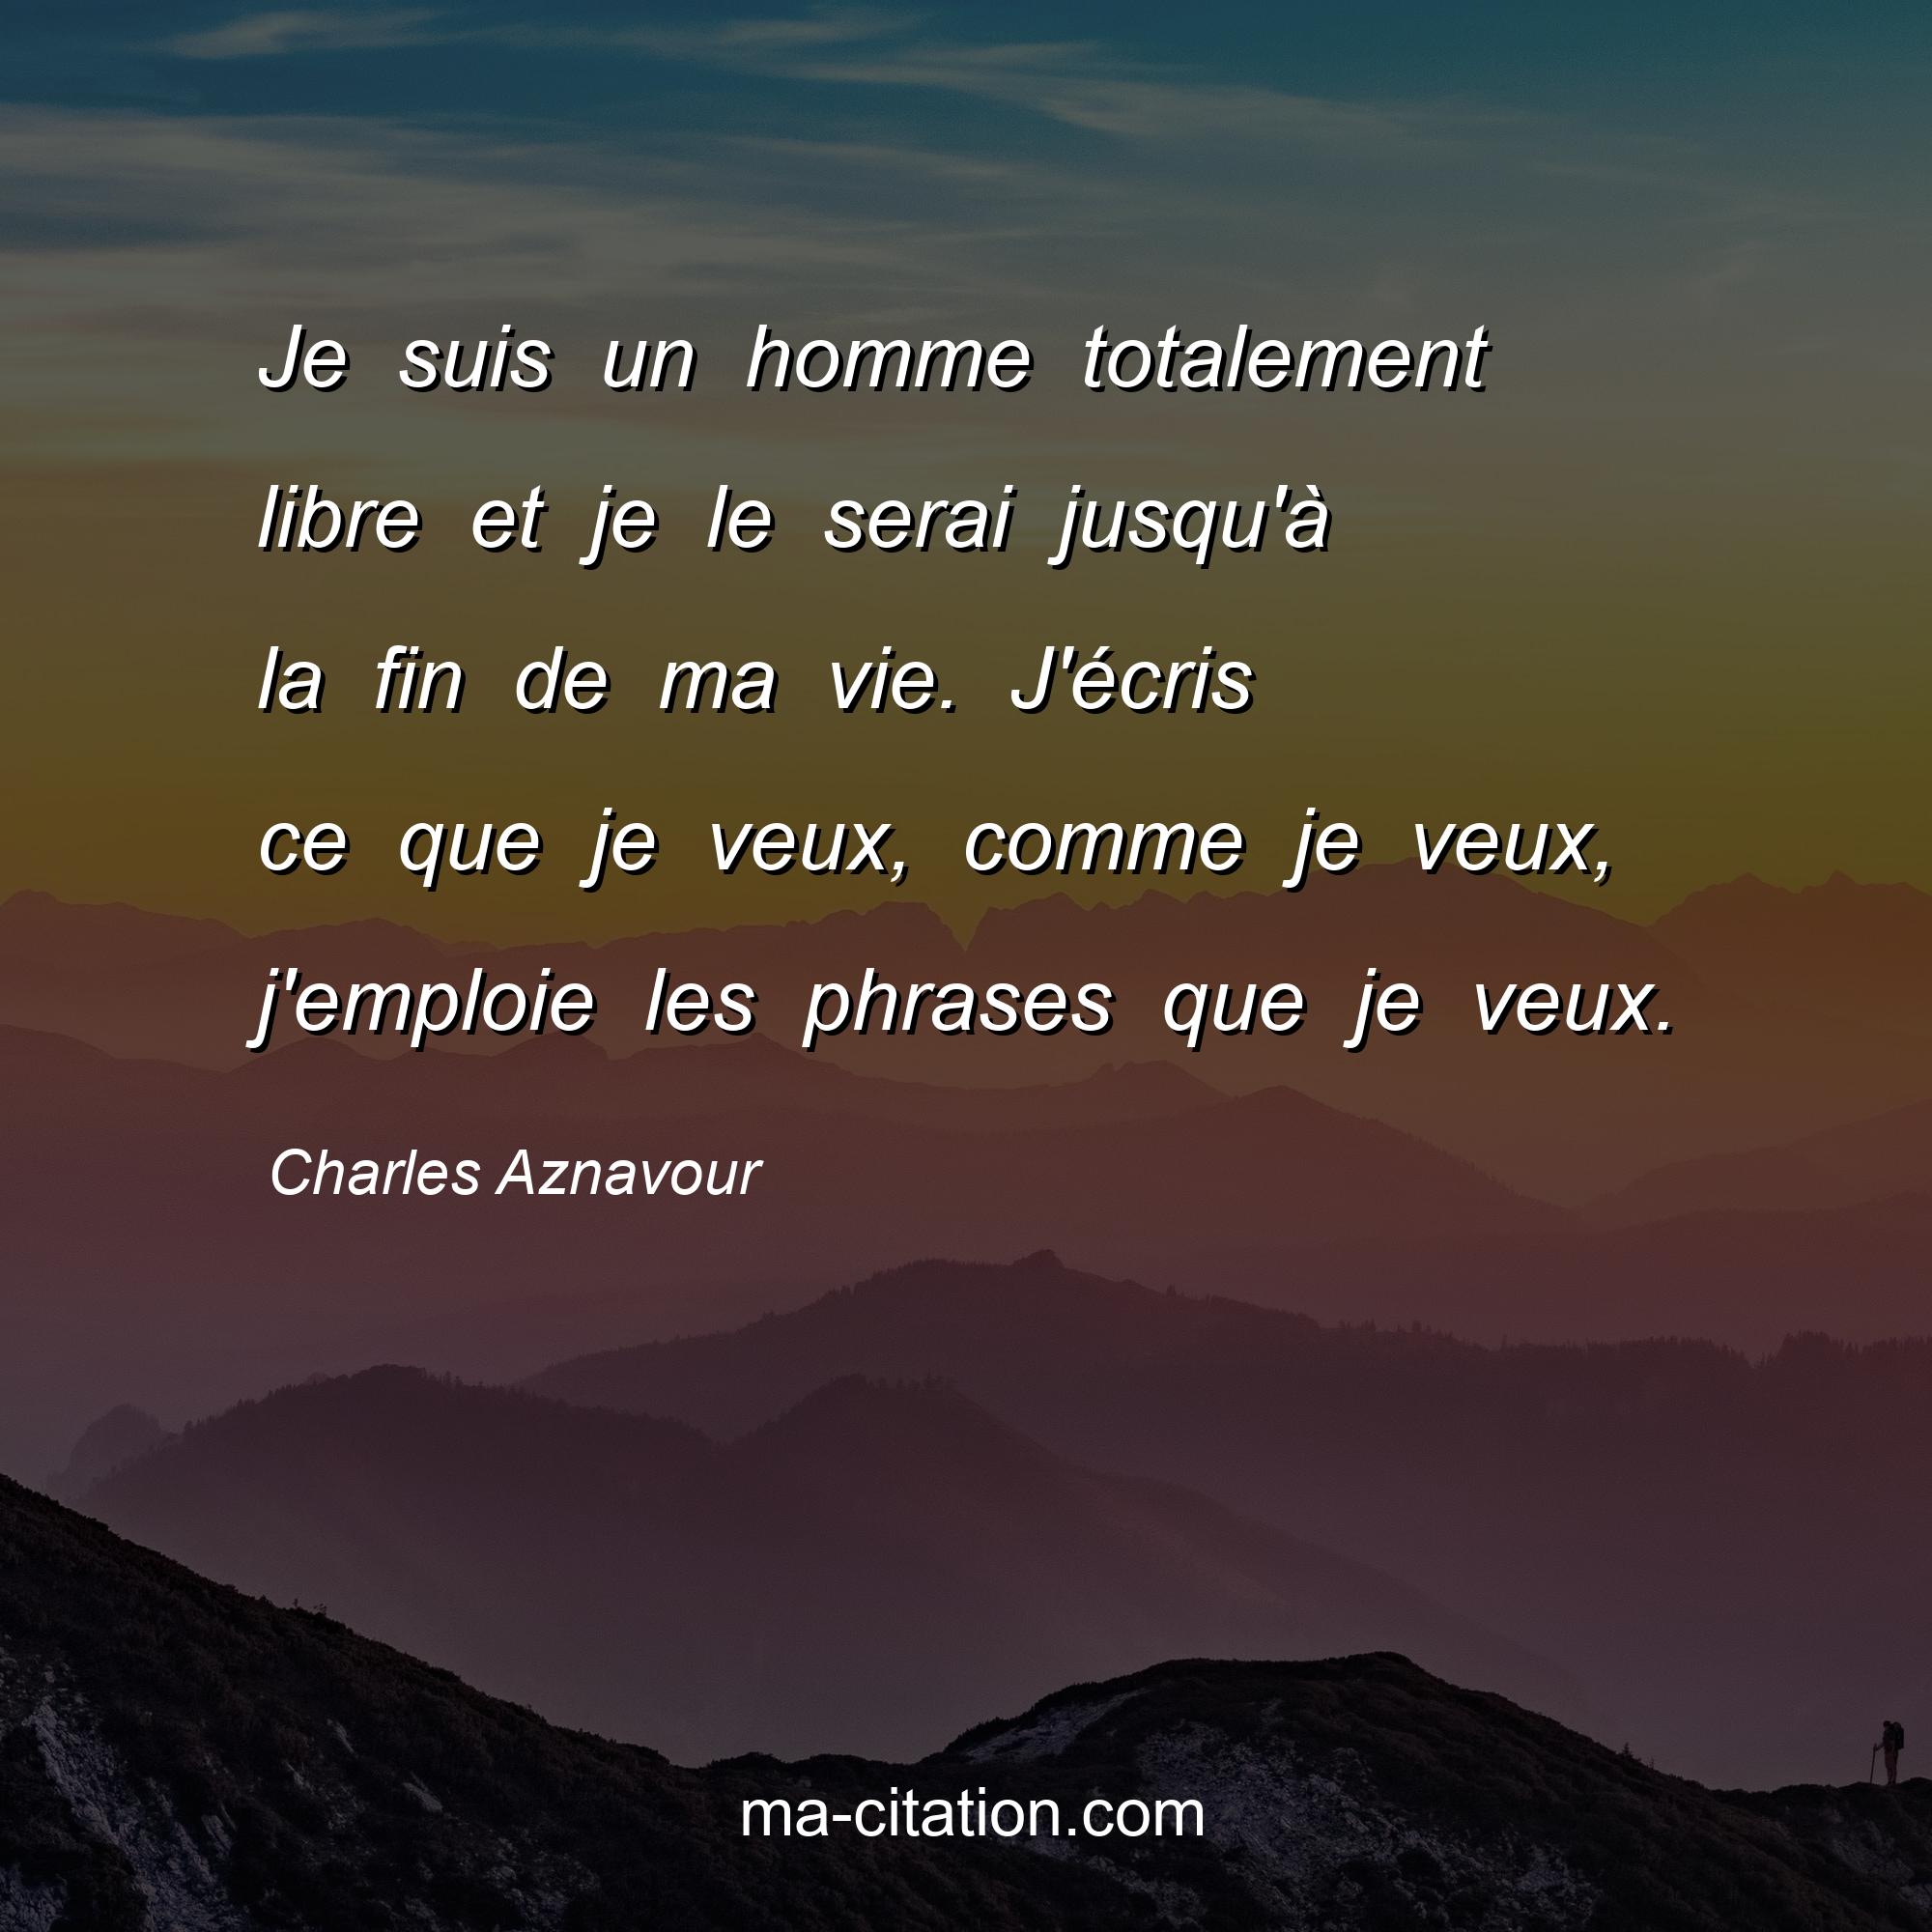 Charles Aznavour : Je suis un homme totalement libre et je le serai jusqu'à la fin de ma vie. J'écris ce que je veux, comme je veux, j'emploie les phrases que je veux.